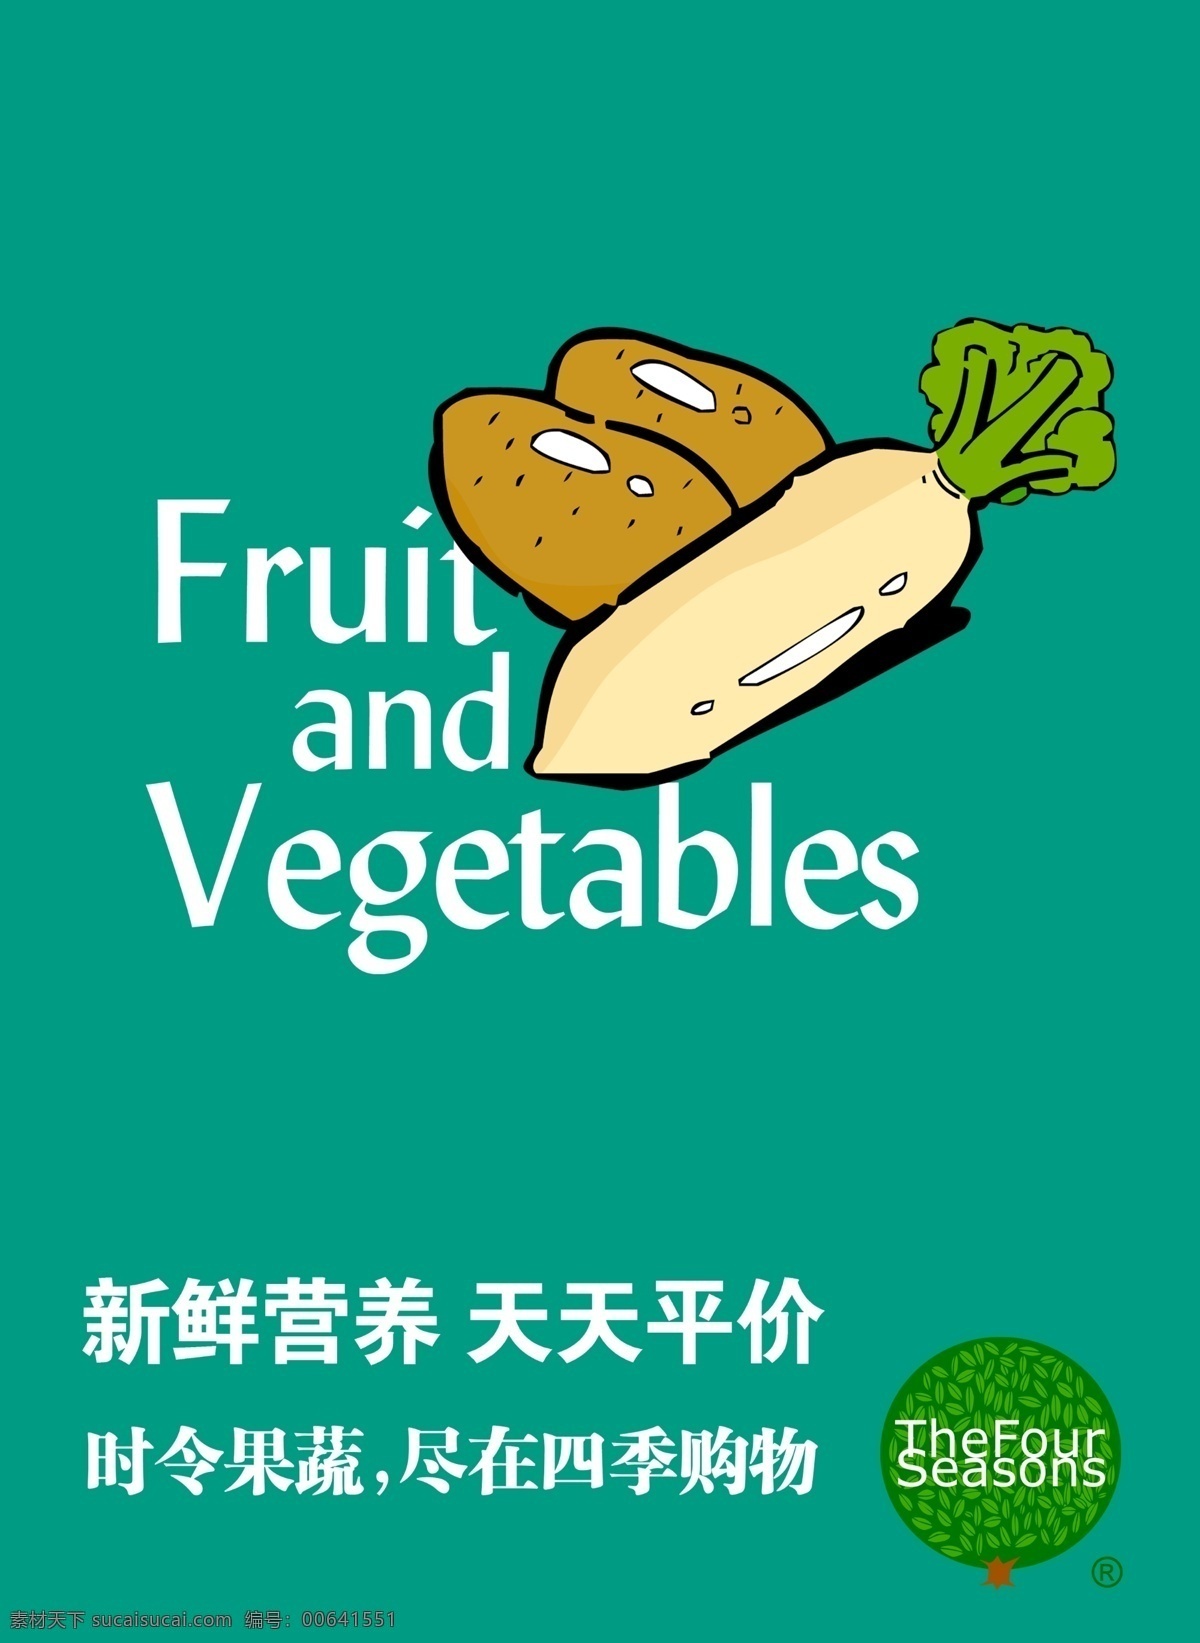 生鲜海报 超市招贴 海报 时令果蔬 生鲜超市 设计成品类